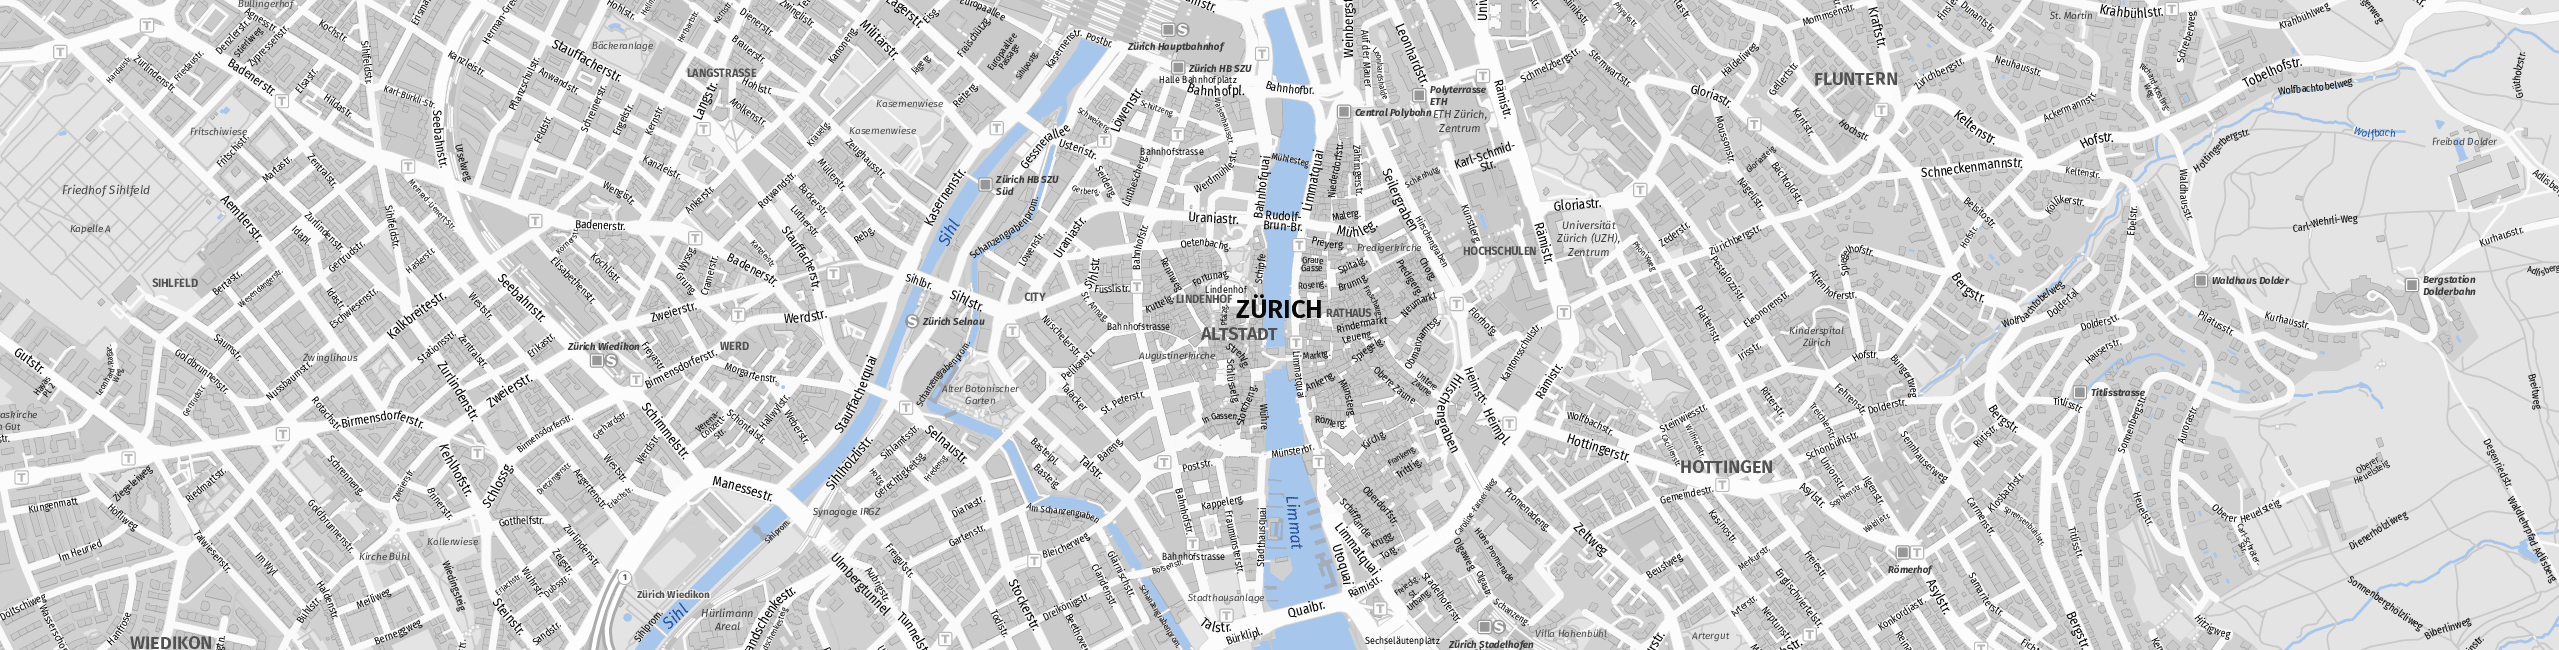 Stadtplan Zurich zum Downloaden.